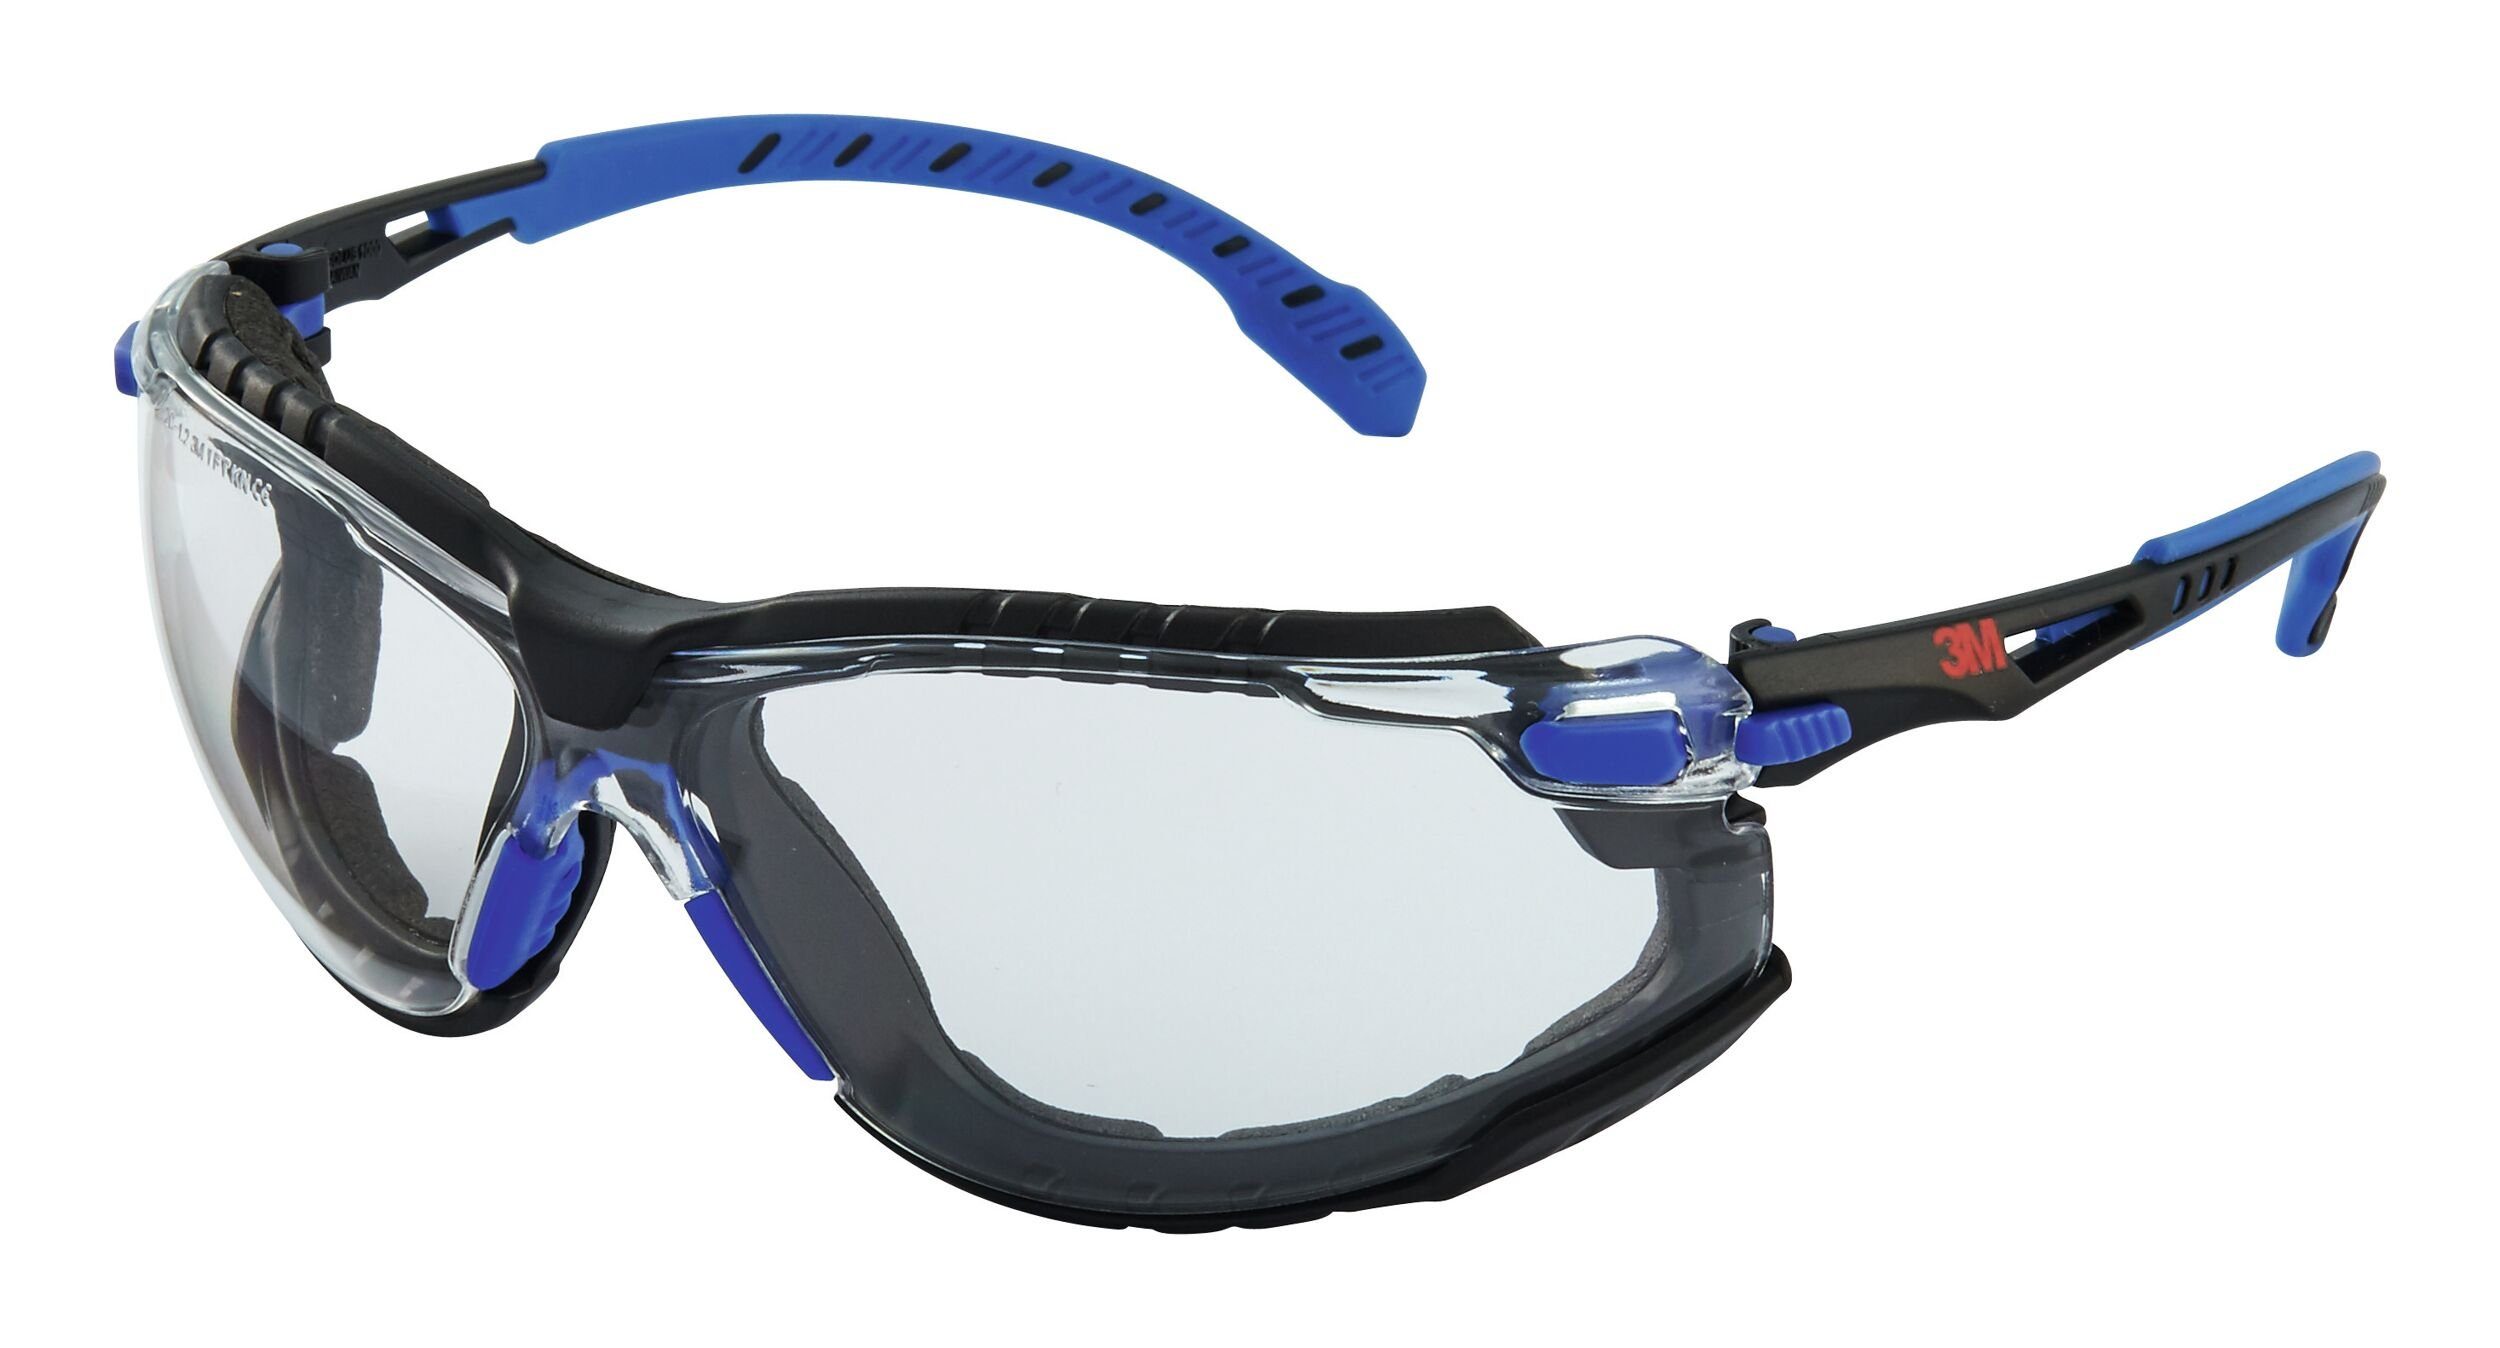 3M Arbeitsschutzbrille, Brille Solus 1000 Set, PC, klar, SGAF/AS, blau/schwarz